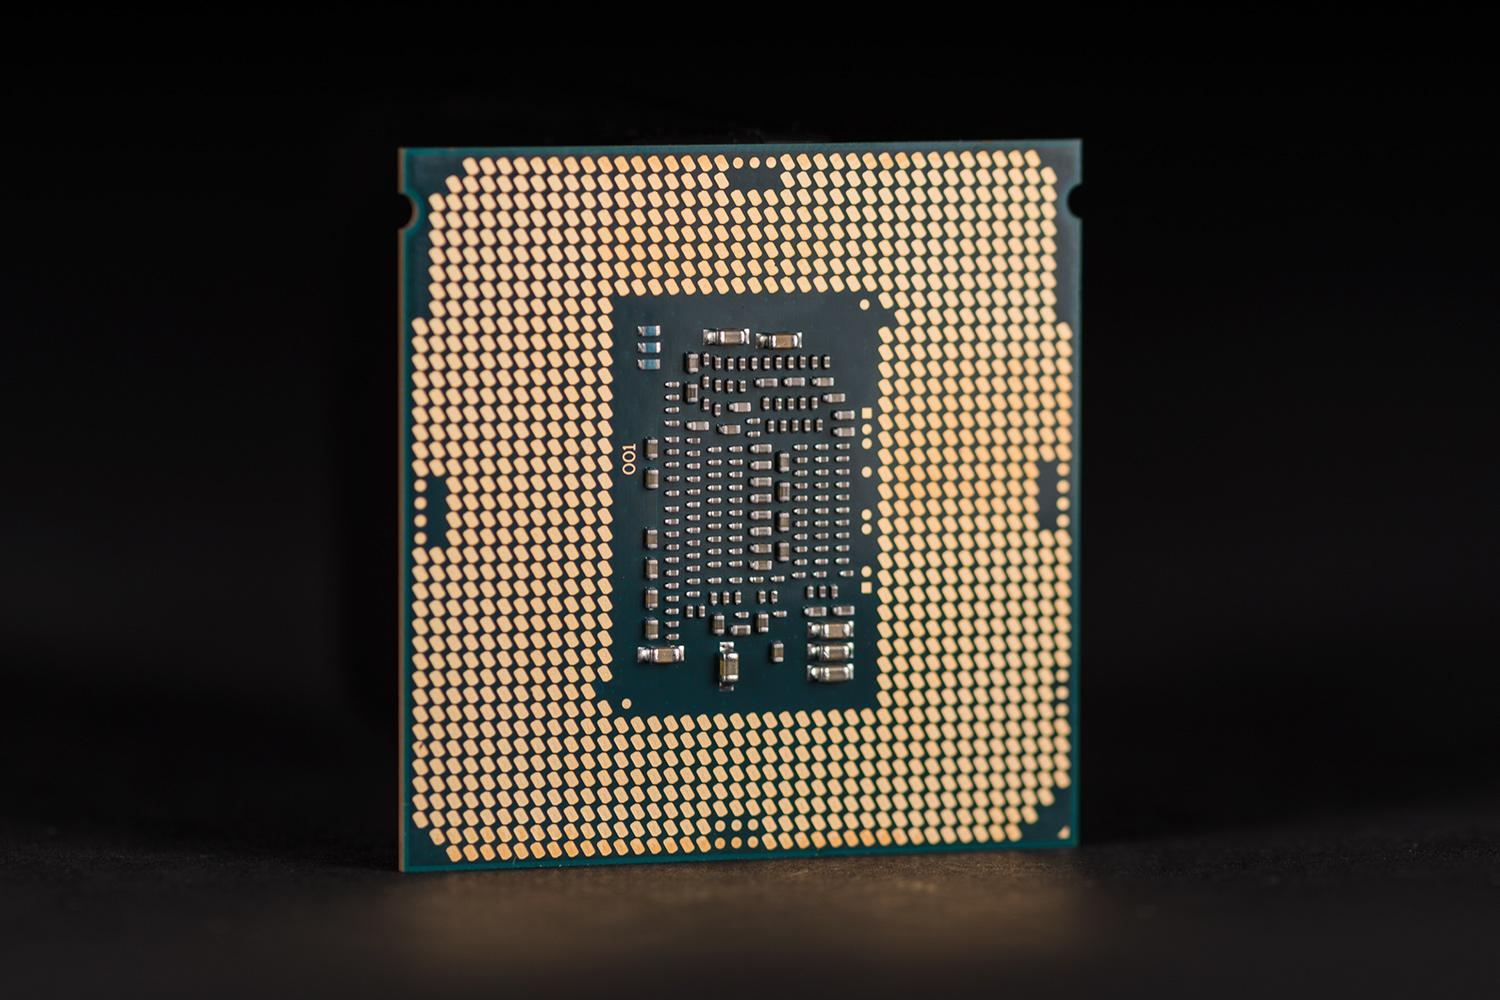 skylake unlocked i3 chips intel i7 6700k review 4